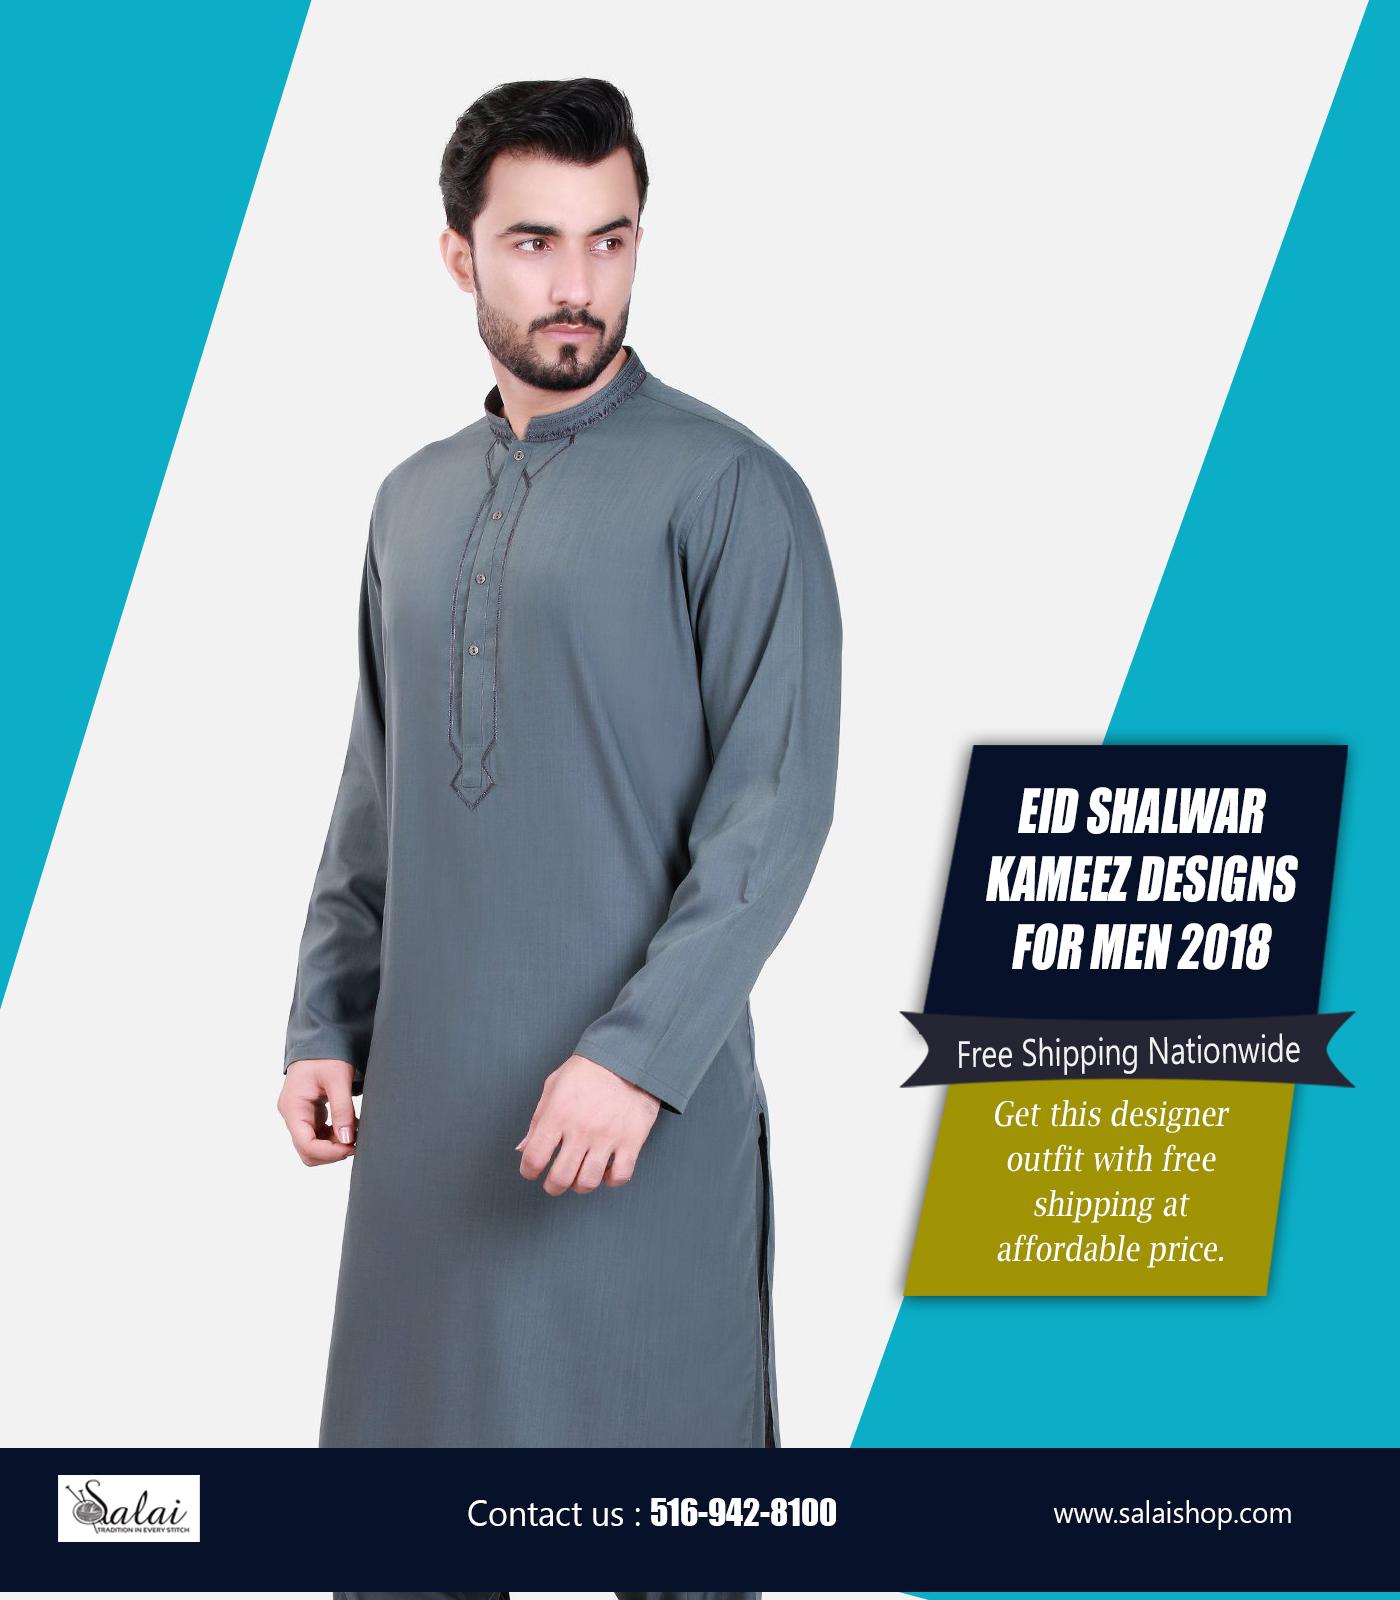 Eid shalwar kameez Designs For Men 2018